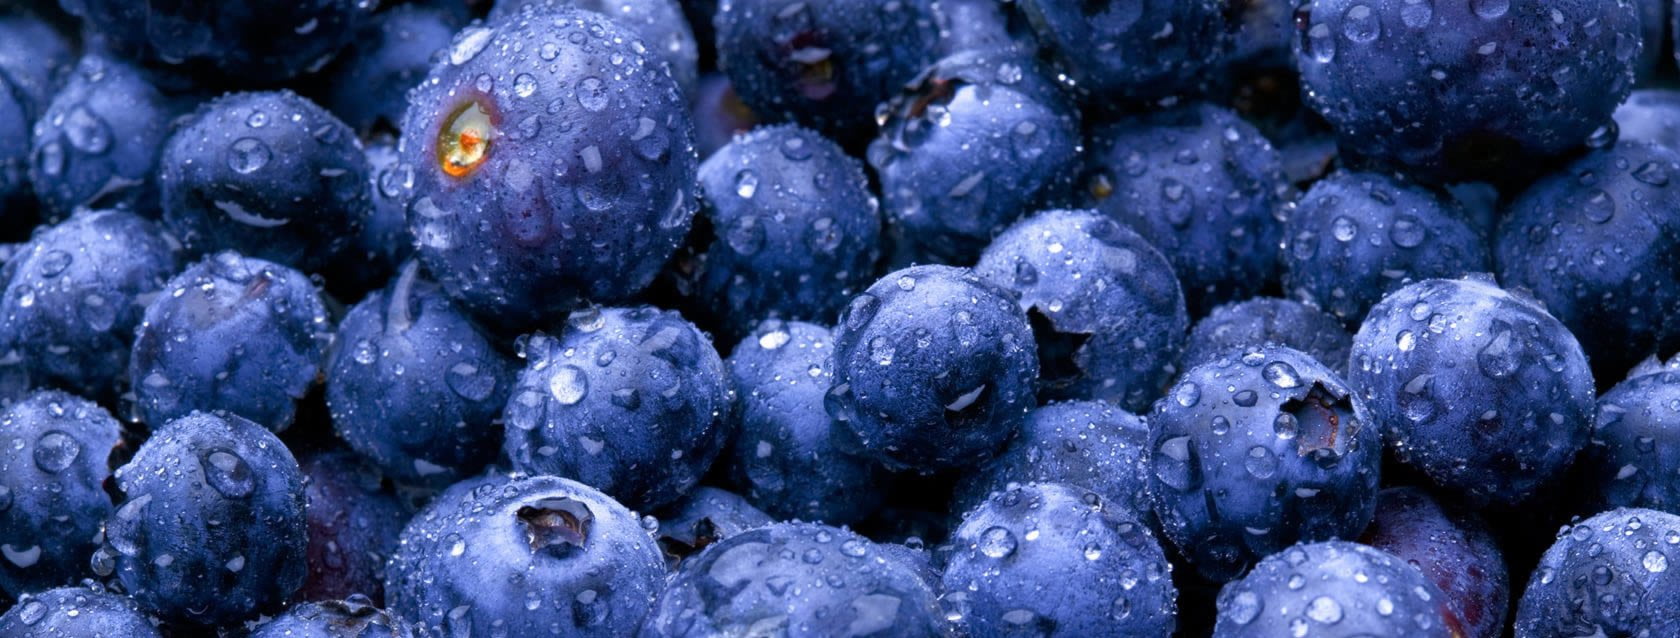 Blueberries E1419584257398 مجلة نقطة العلمية